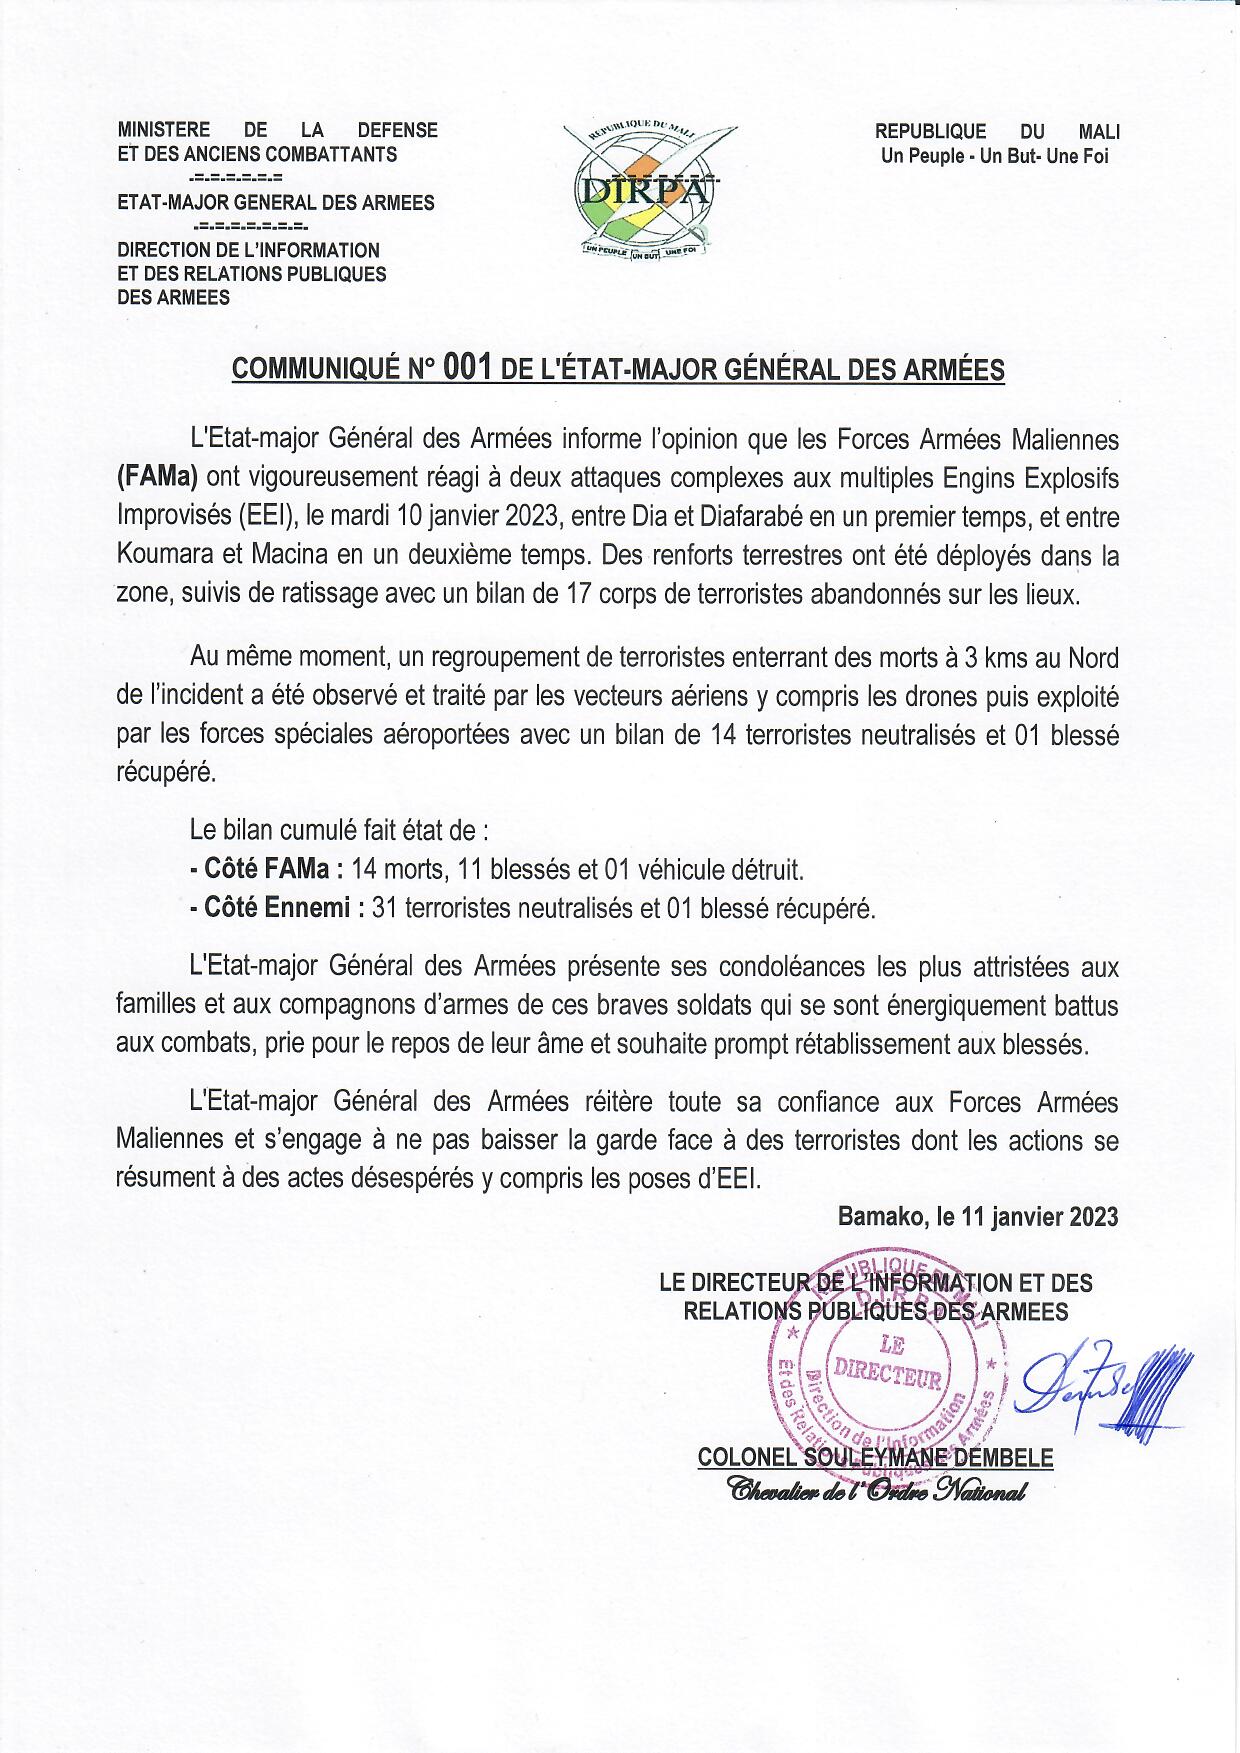  COMMUNIQUÉ N° 001 DE L'ÉTAT-MAJOR GÉNÉRAL DES ARMÉES DU 11 JANVIER 2023.